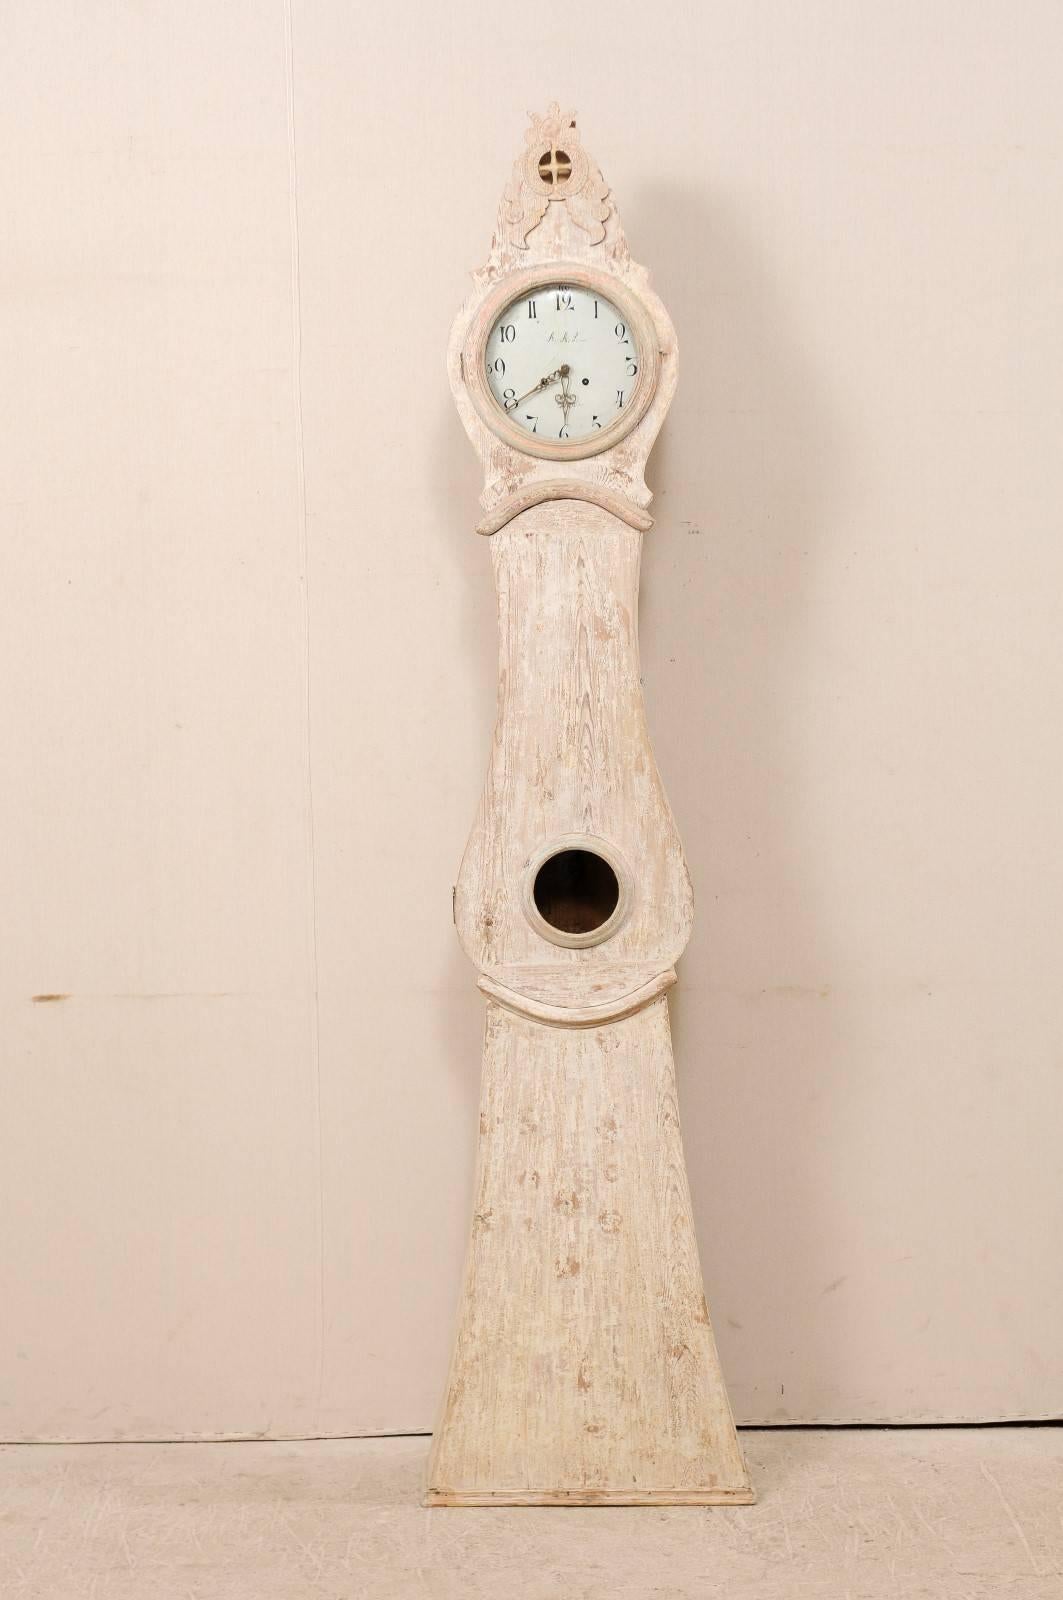 Eine schwedische Uhr aus bemaltem Holz aus dem 19. Jahrhundert. Diese schwedische Uhr aus der Grafschaft Norrbotten, Schweden (nördliche Region), weist ein überhöhtes und erhabenes Wappen auf, das in der Mitte mit einem durchbrochenen, geviertelten